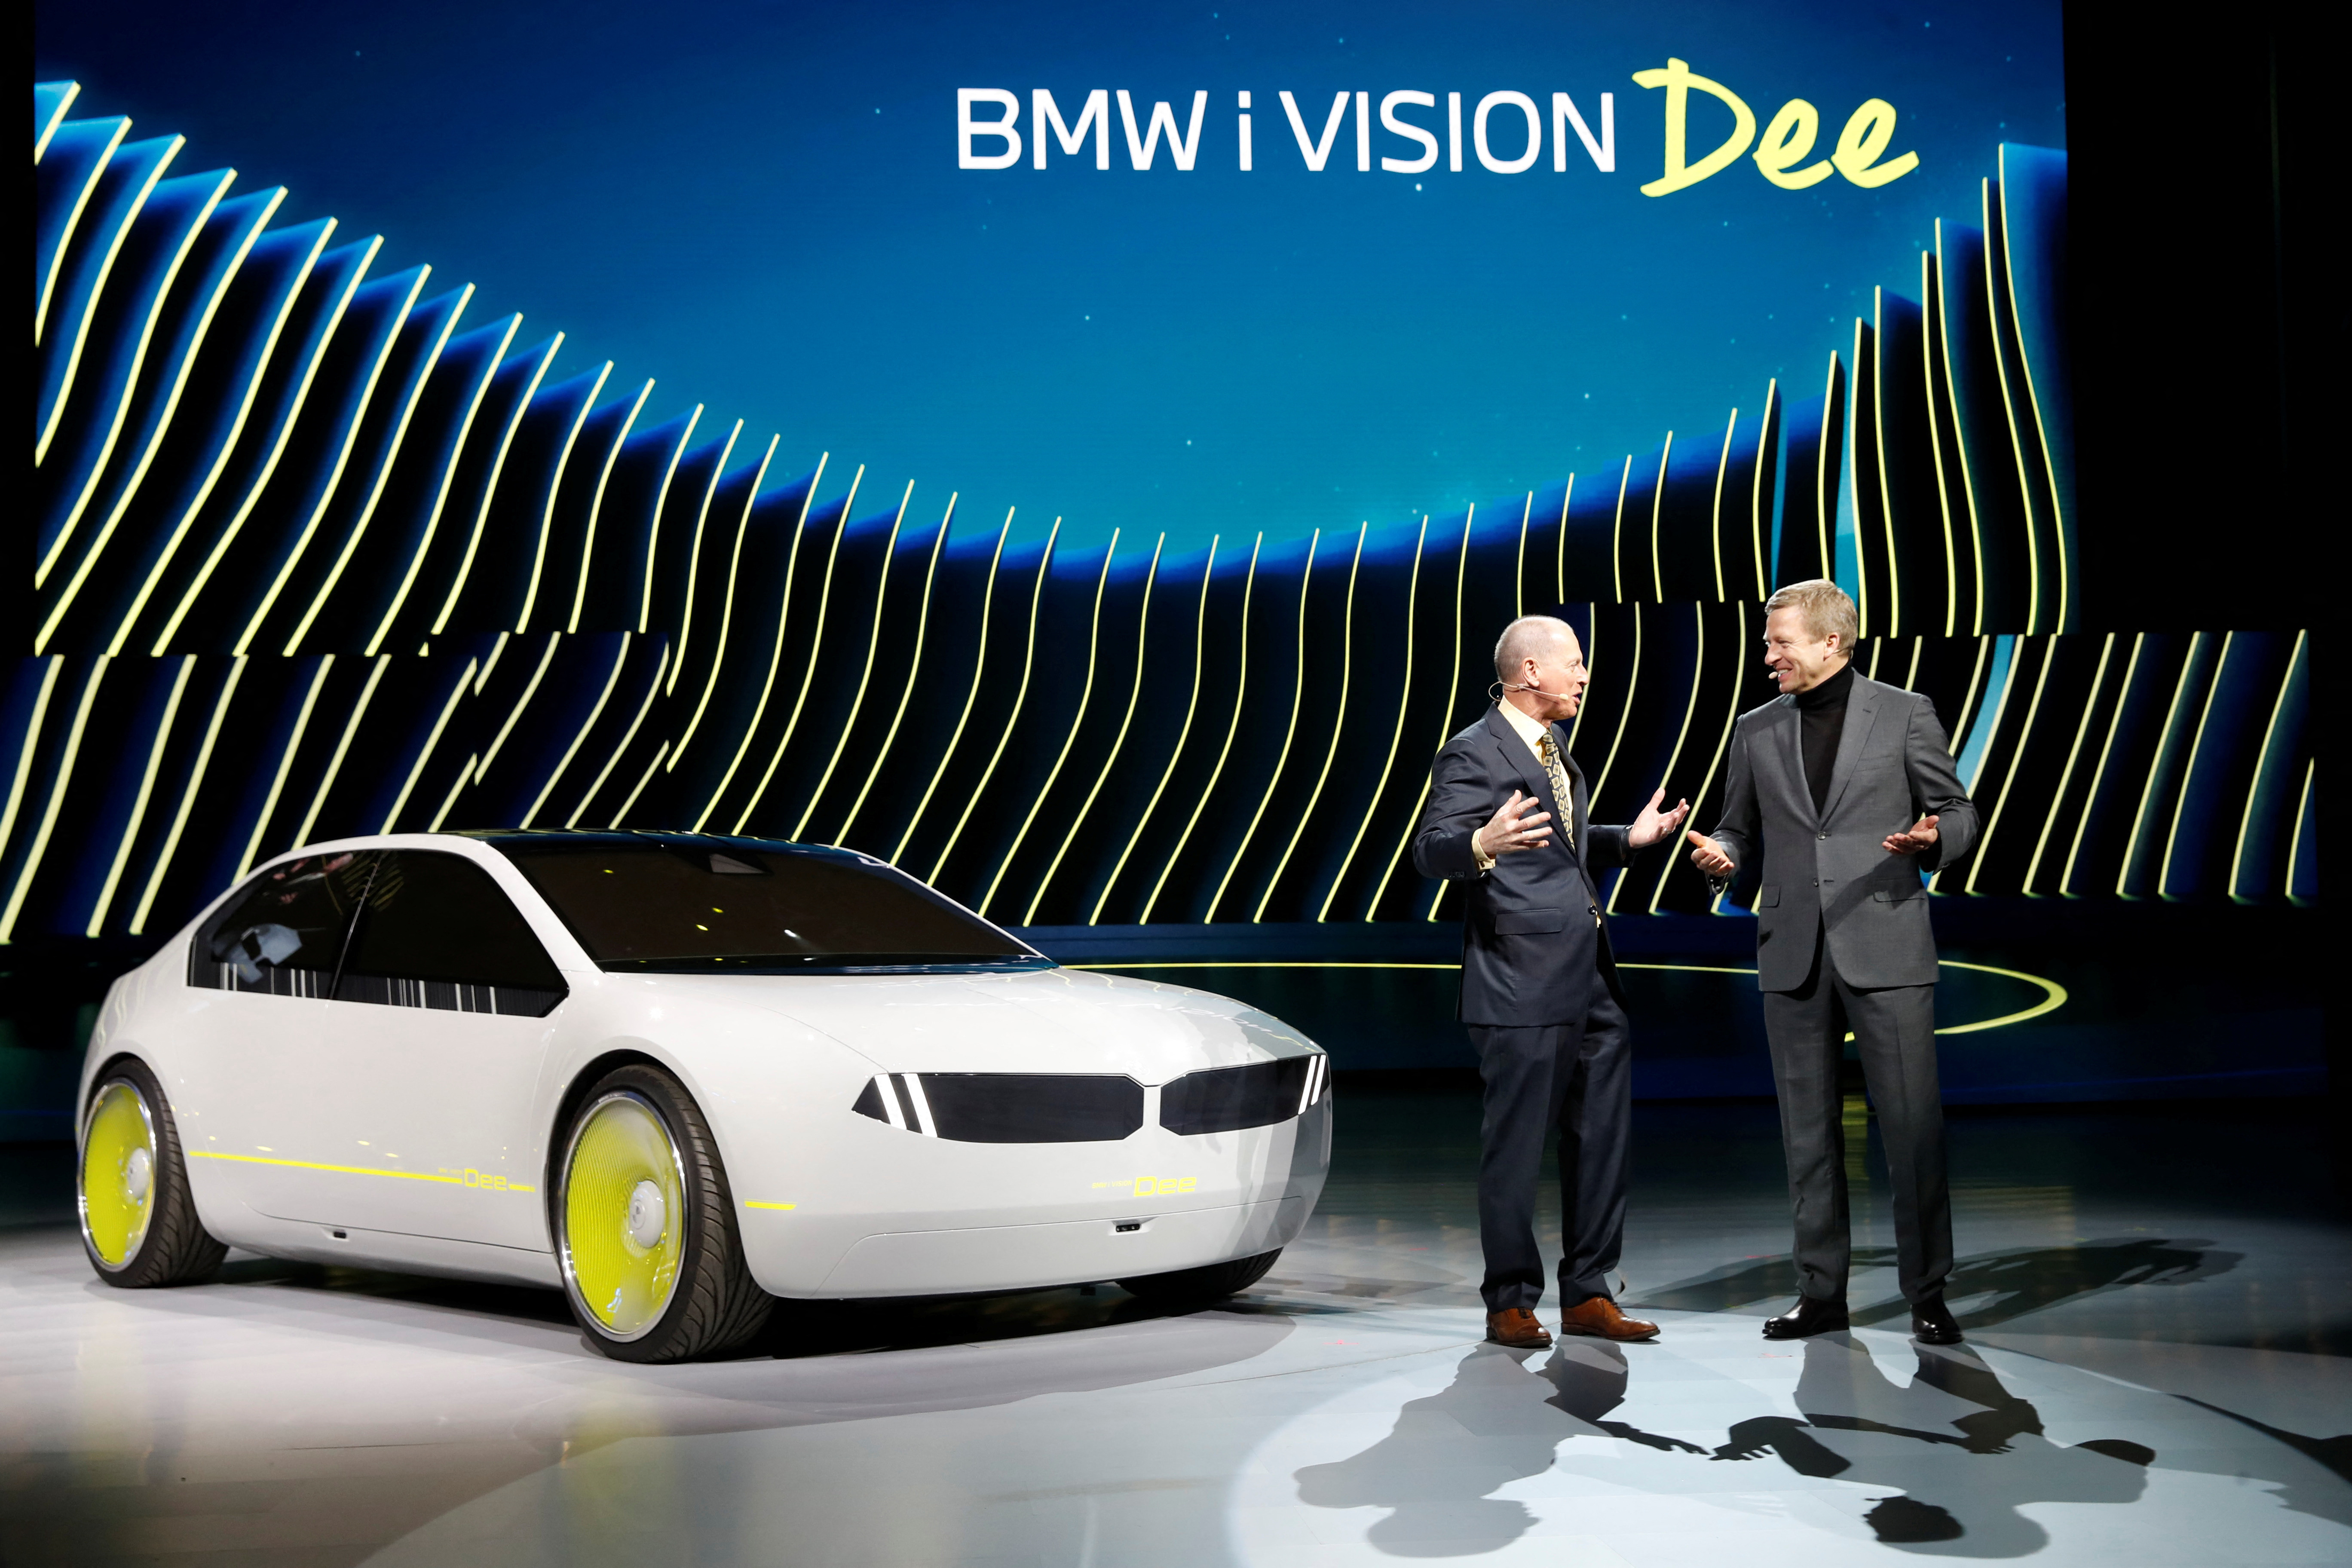 BMW modifie son célèbre logo - Guide Auto